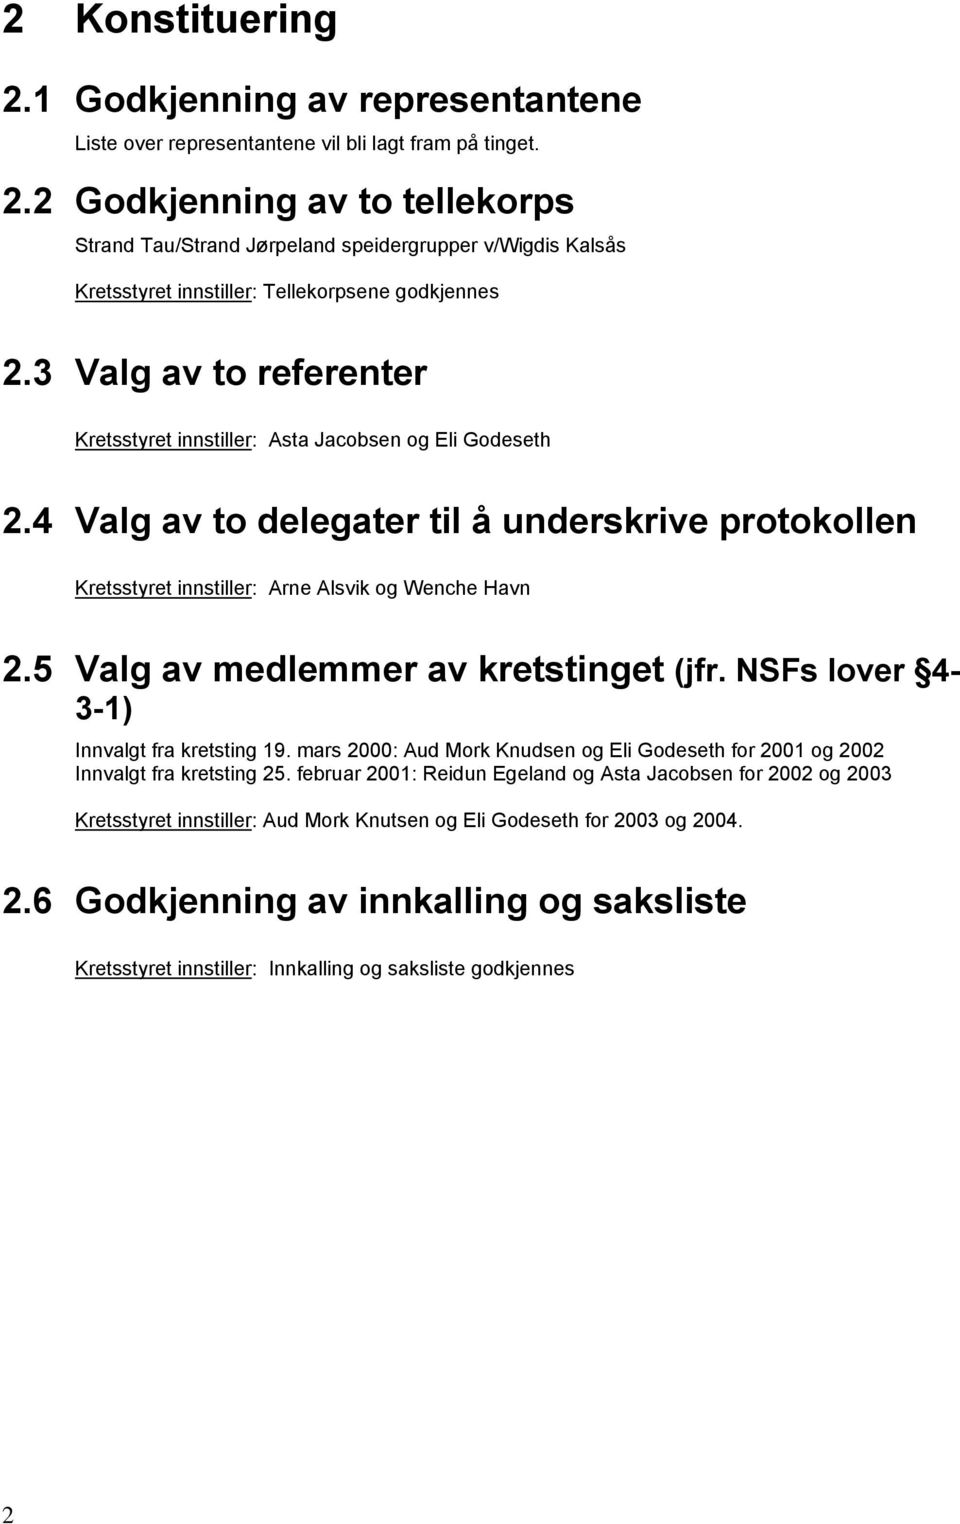 5 Valg av medlemmer av kretstinget (jfr. NSFs lover 4-3-1) Innvalgt fra kretsting 19. mars 2000: Aud Mork Knudsen og Eli Godeseth for 2001 og 2002 Innvalgt fra kretsting 25.